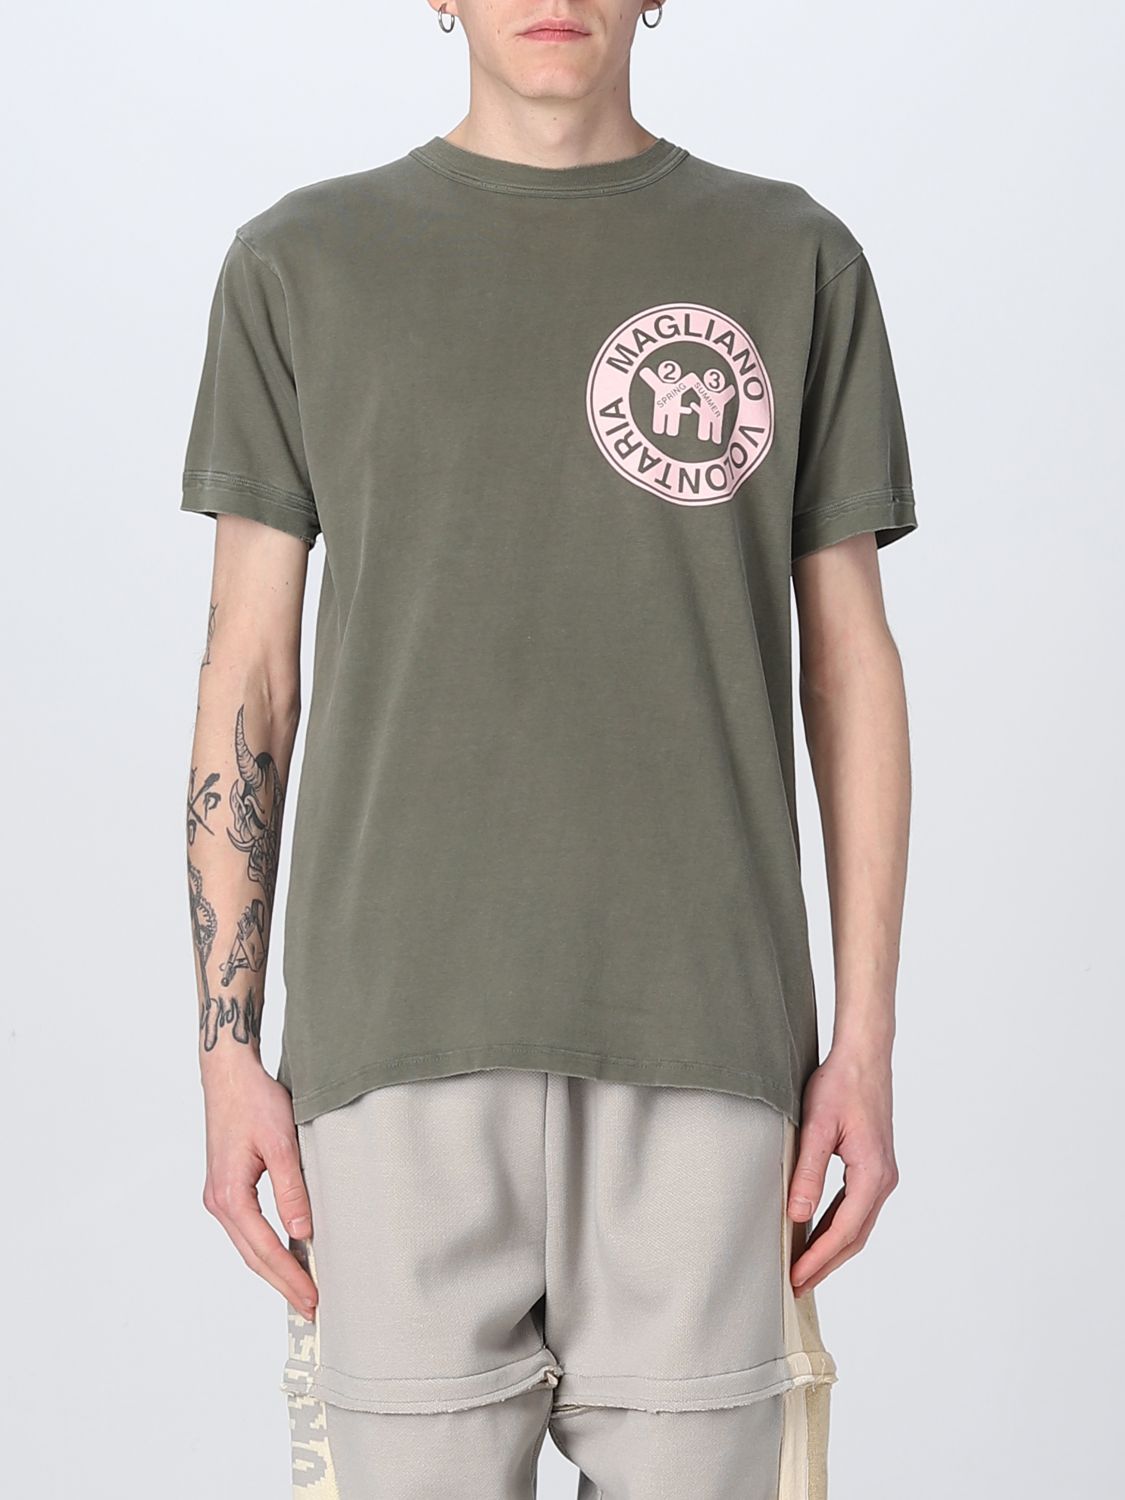 T-shirt Magliano: T-shirt di cotone Magliano con stampa grafica militare 1